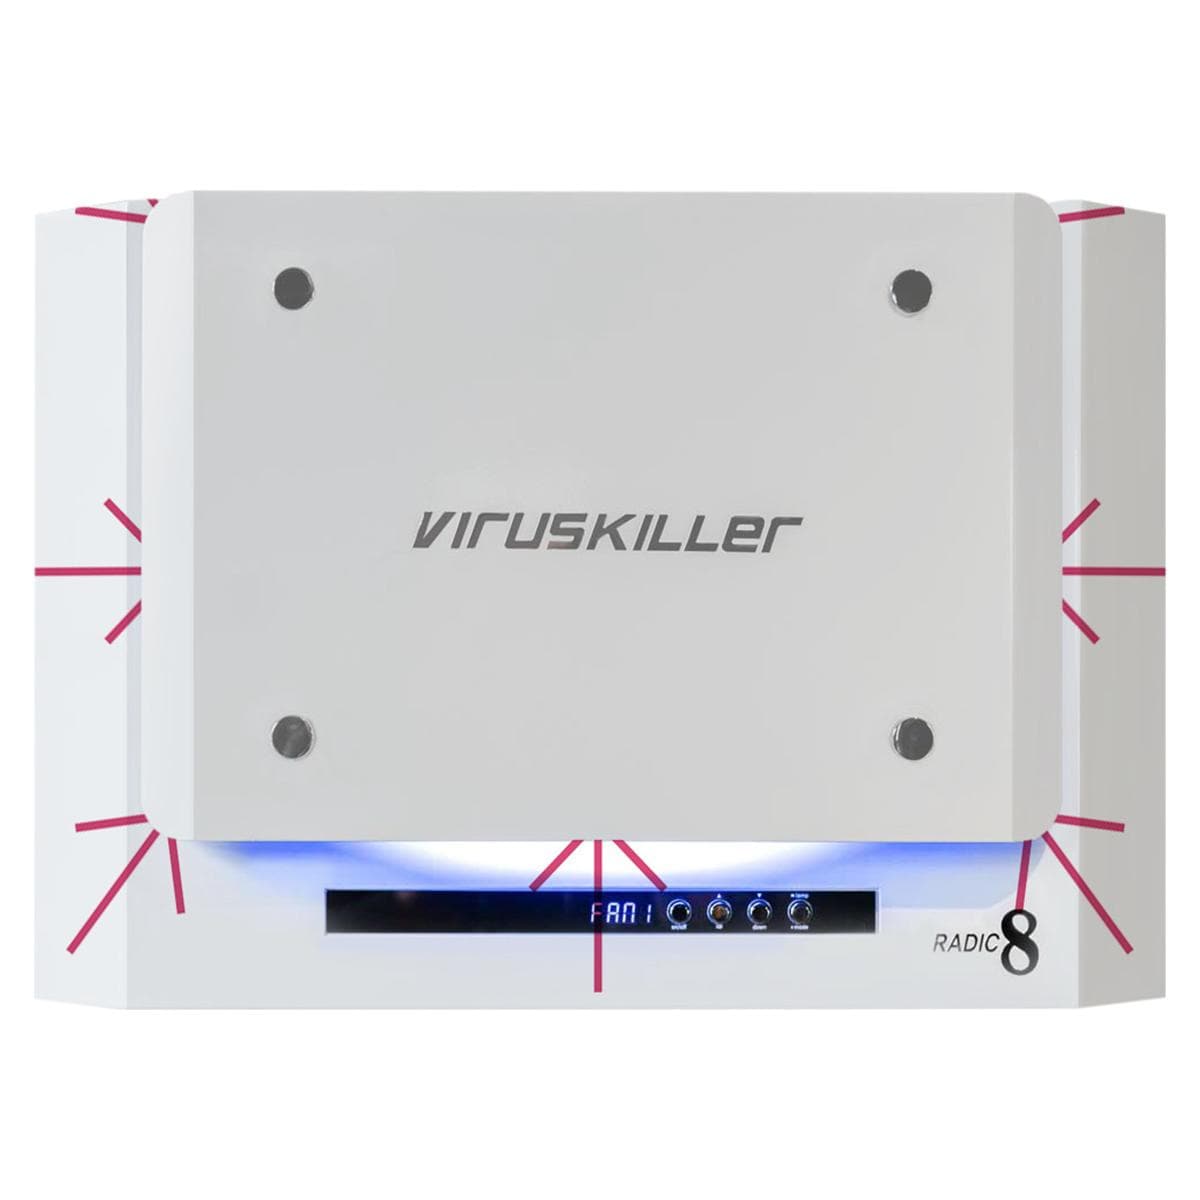 Viruskiller VK 401 Luftreinigungssystem - Wandgerät für Behandlungs- und Wartezimmer